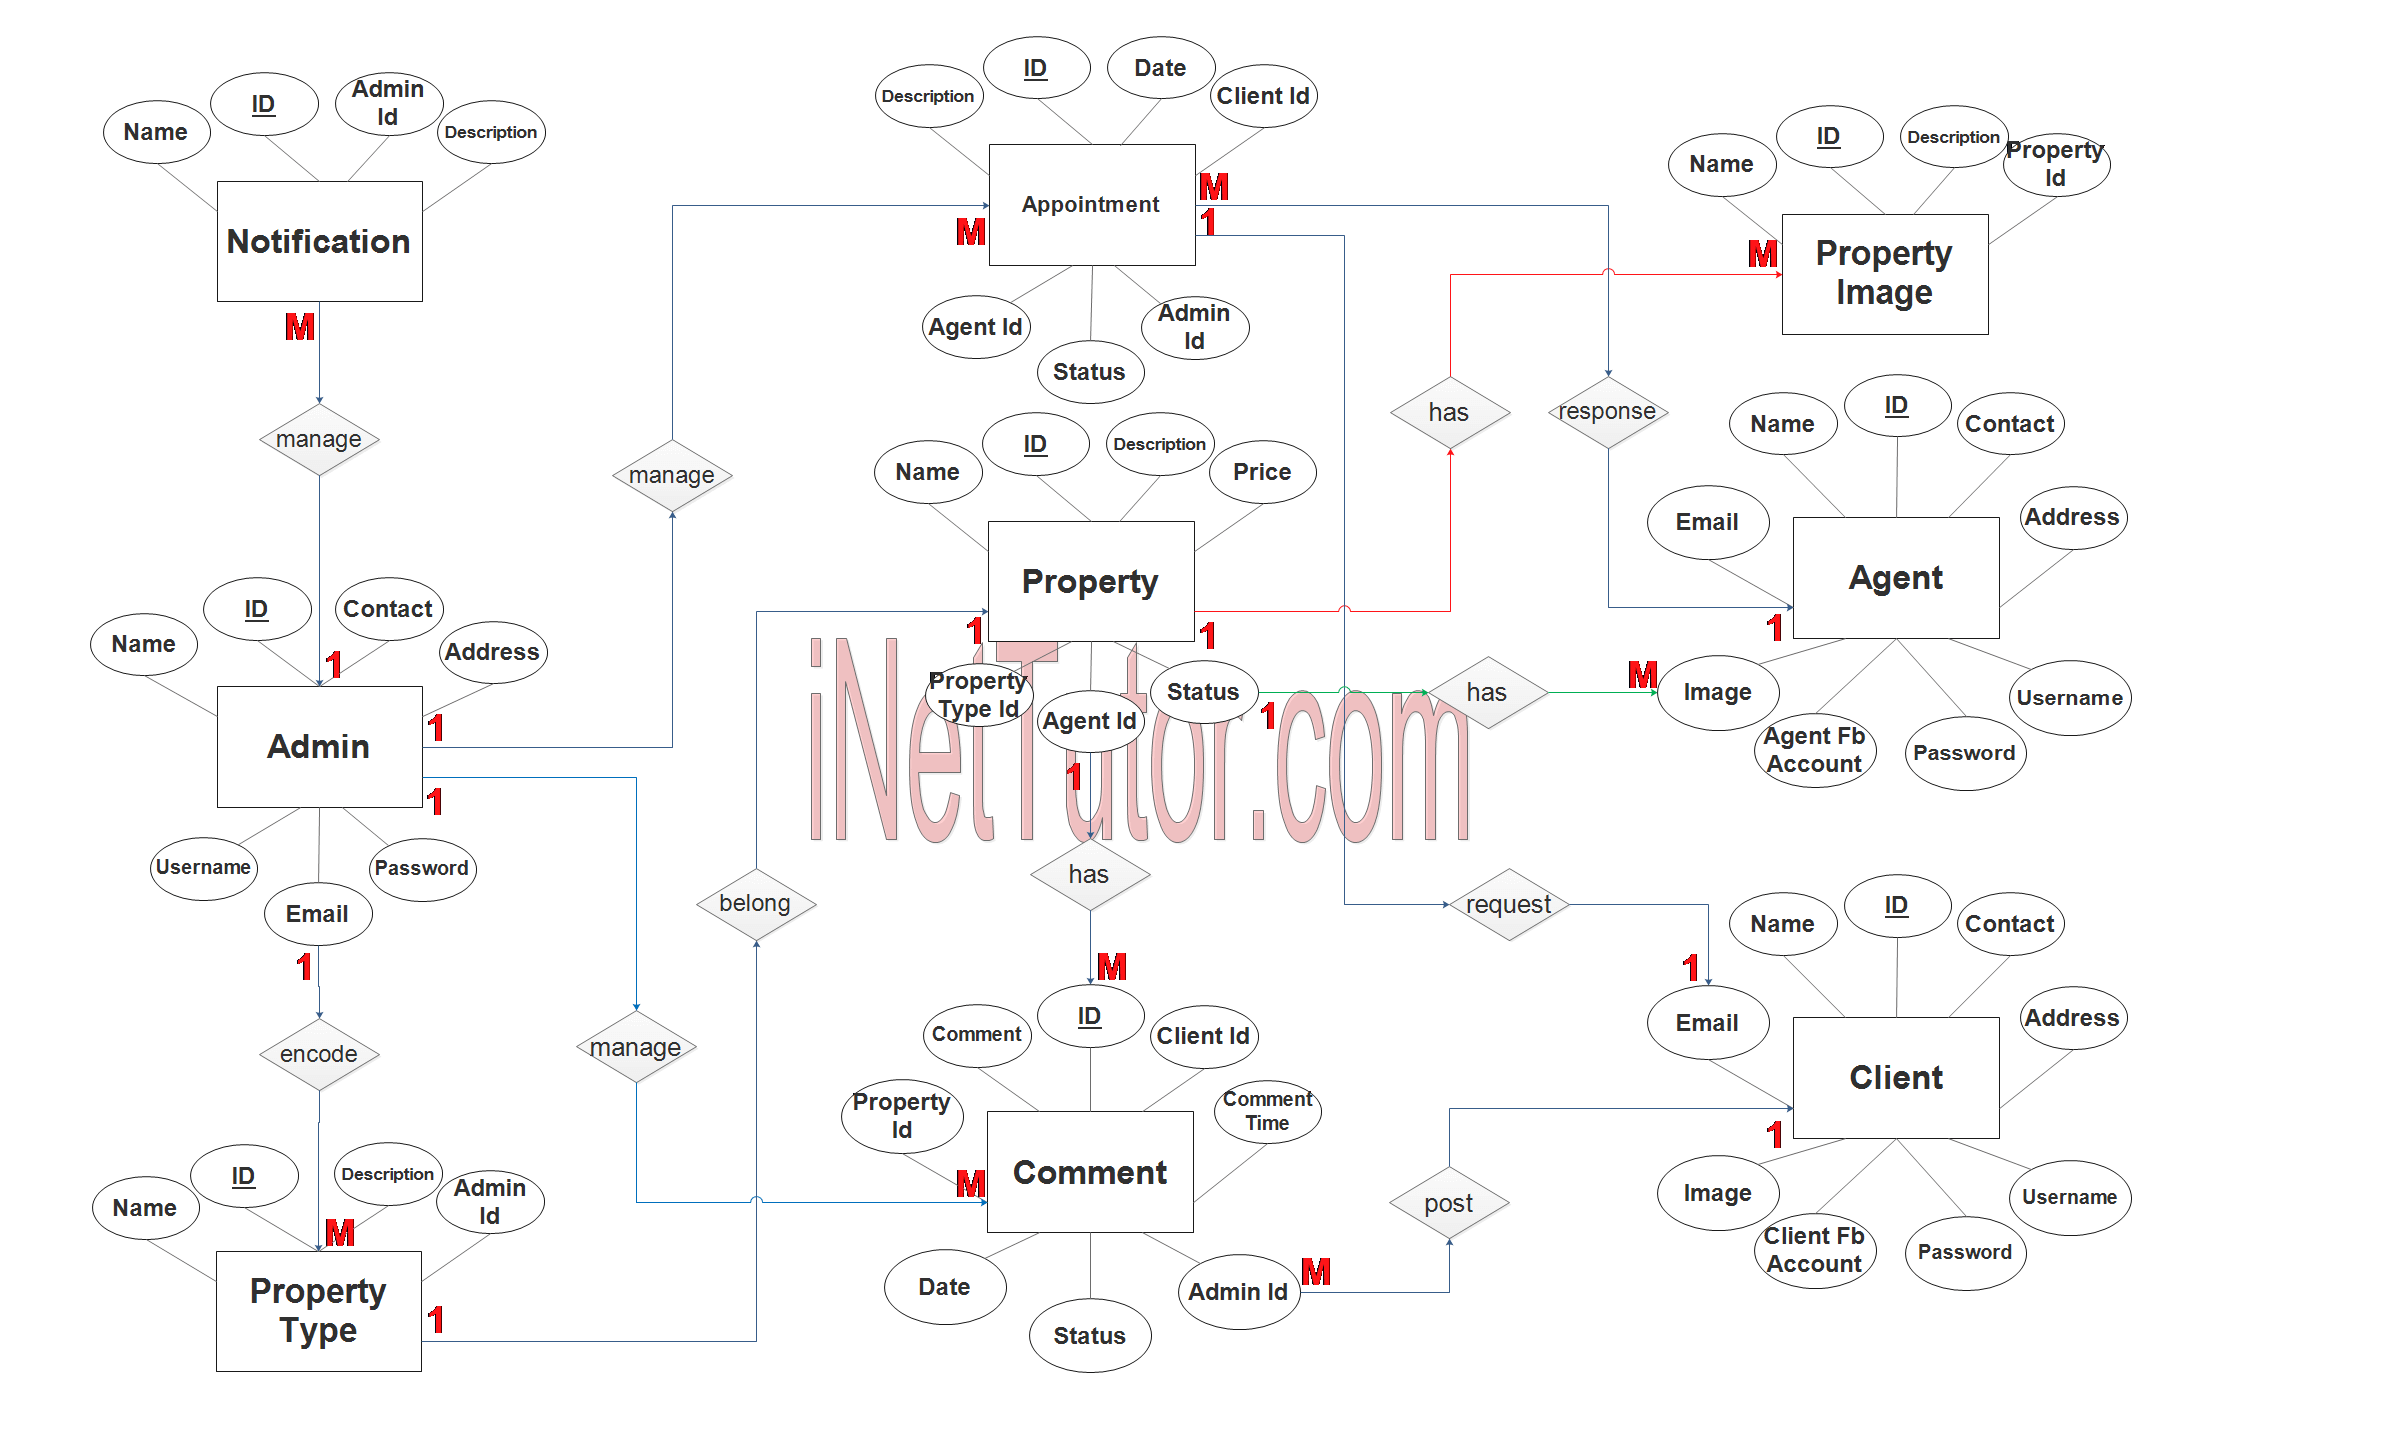 Real Estate Management System ER Diagram Step 3 Complete ERD 